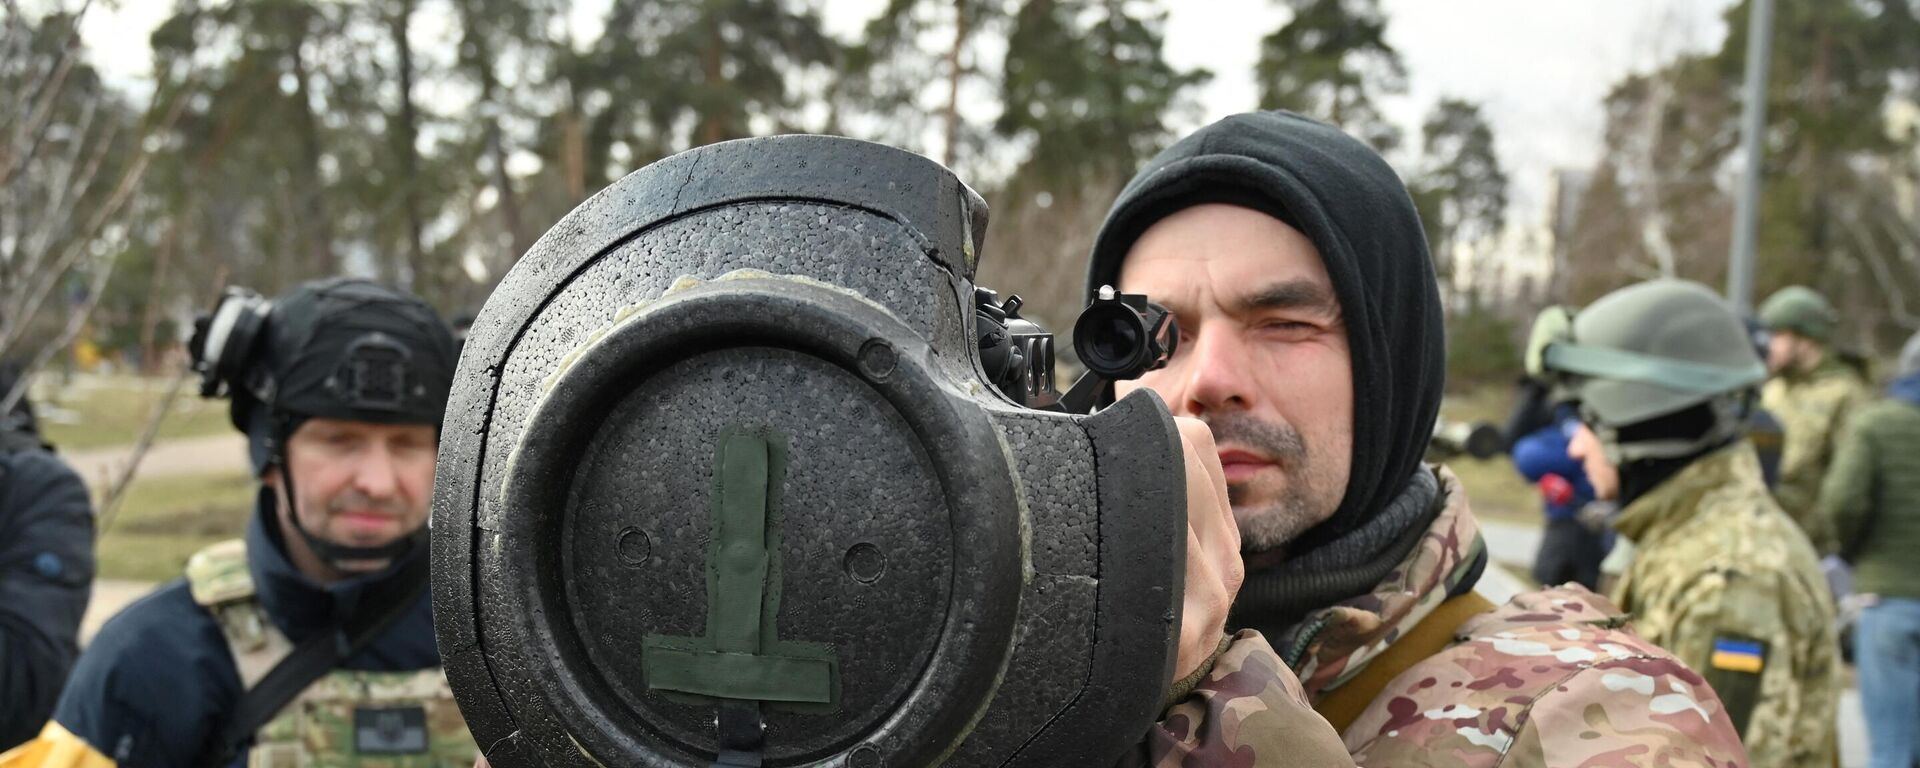 Binh sĩ Ukraina kiểm tra vũ khí mới, bao gồm hệ thống chống tăng NLAW và các loại súng phóng lựu chống tăng khác, ở Kiev - Sputnik Việt Nam, 1920, 14.05.2022